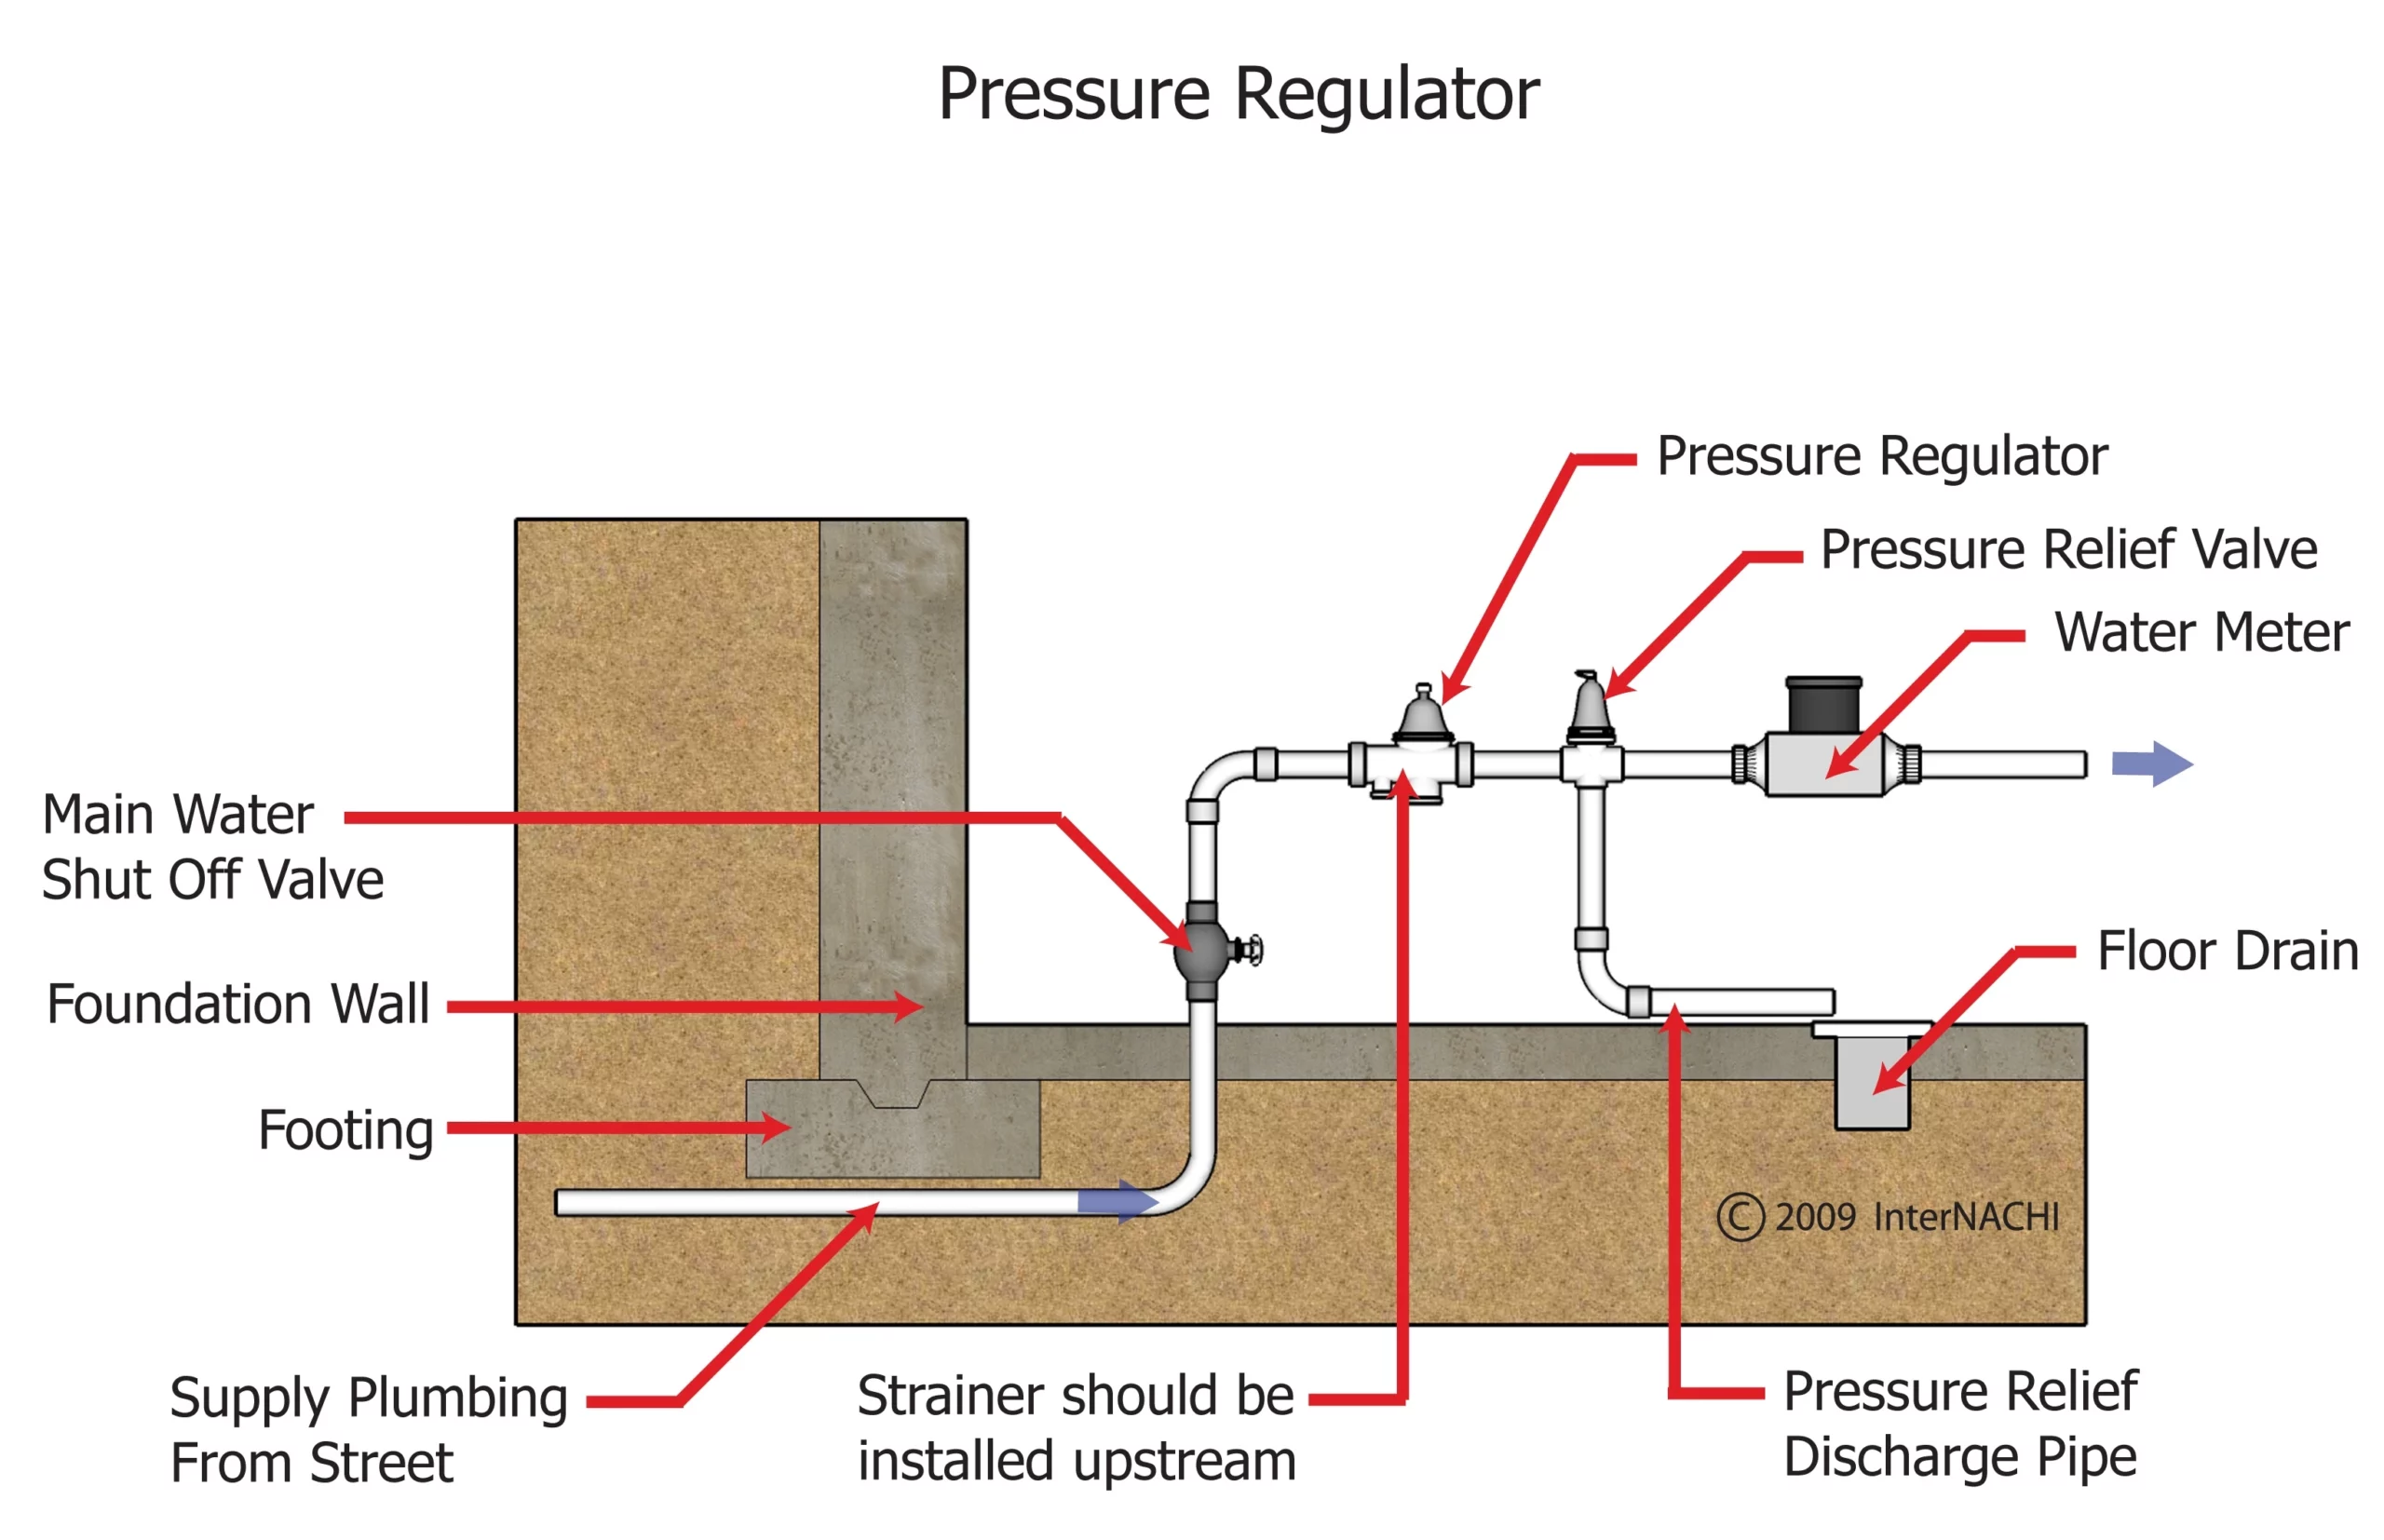 Cómo instalar una válvula de agua reductora de presión (costo y mantenimiento en 2022) 